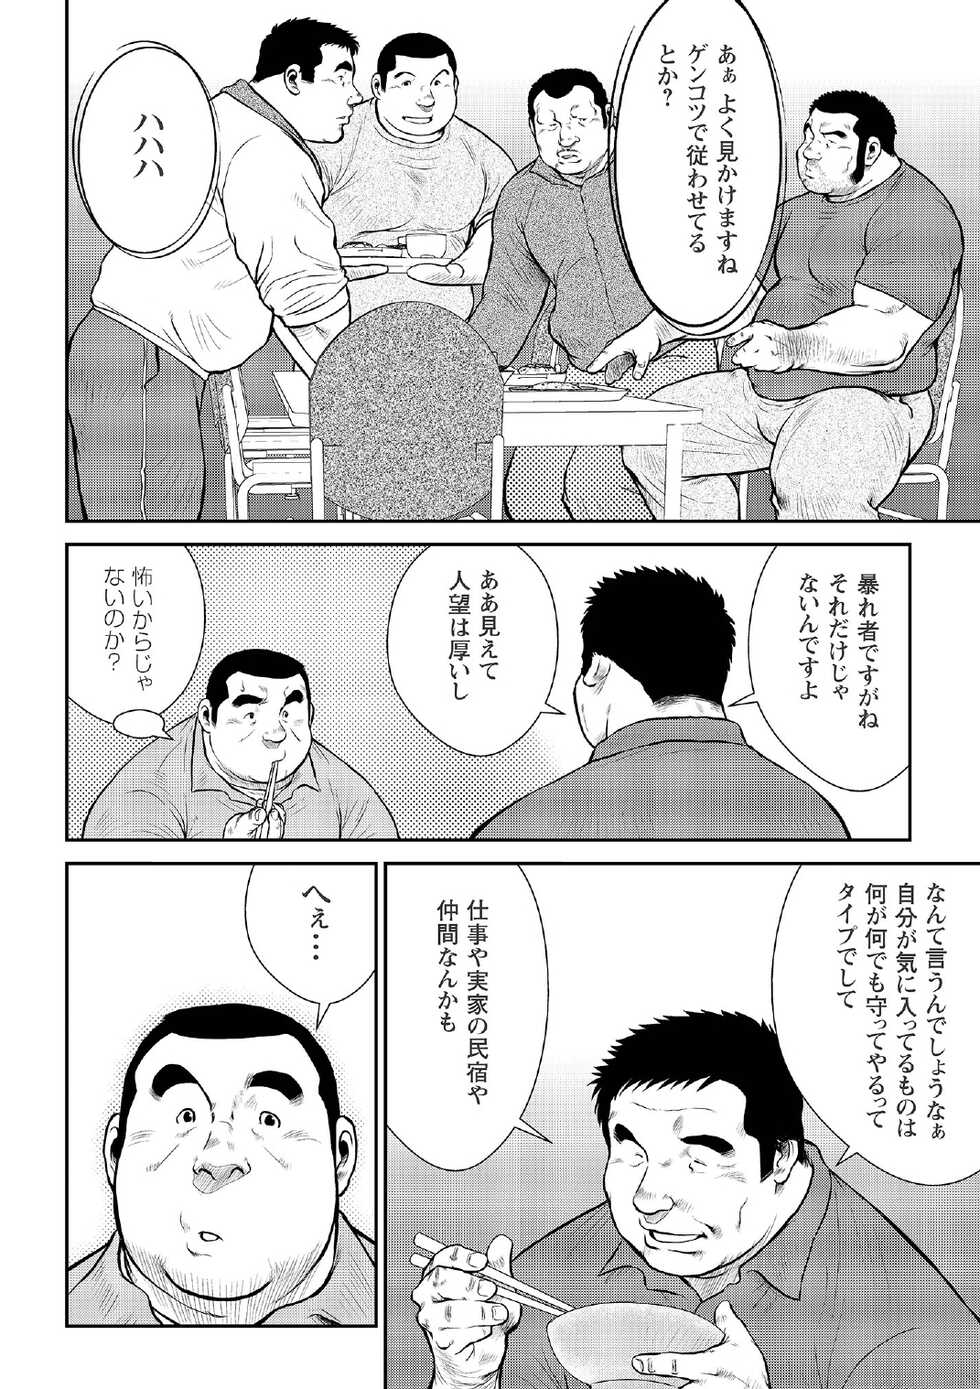 [Ebisubashi Seizou] Ebisubashi Seizou Tanpen Manga Shuu 2 Fuuun! Danshi Ryou [Bunsatsuban] PART 2 Bousou Hantou Taifuu Zensen Ch. 1 + Ch. 2 [Digital] - Page 28